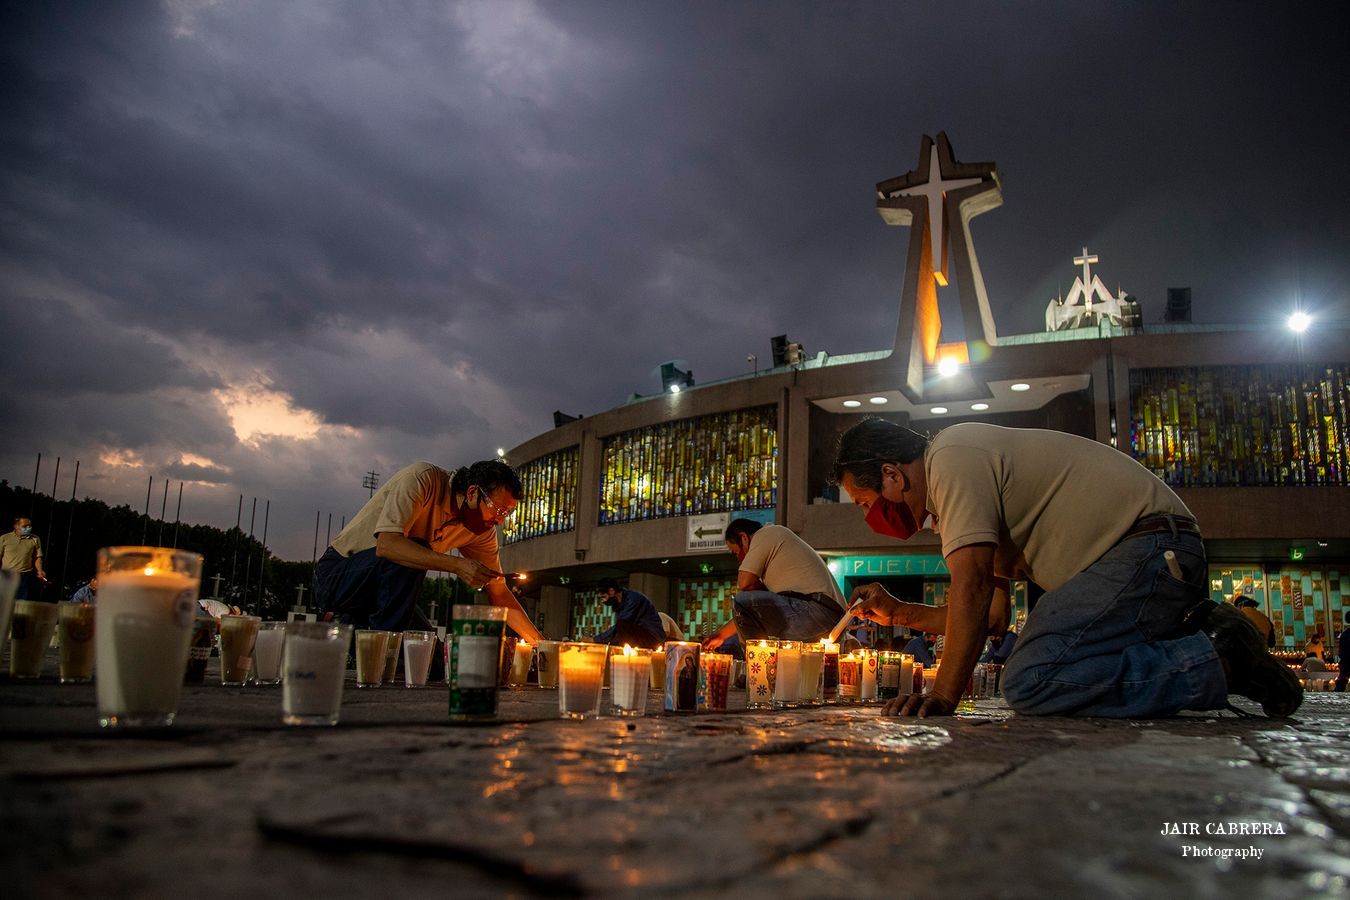 La Basílica de Guadalupe, el recinto católico más importante de América cerró sus puertas para evitar contagios de Covid-19, donde cada año acuden cerca de 7 millones de personas. Diciembre 2020